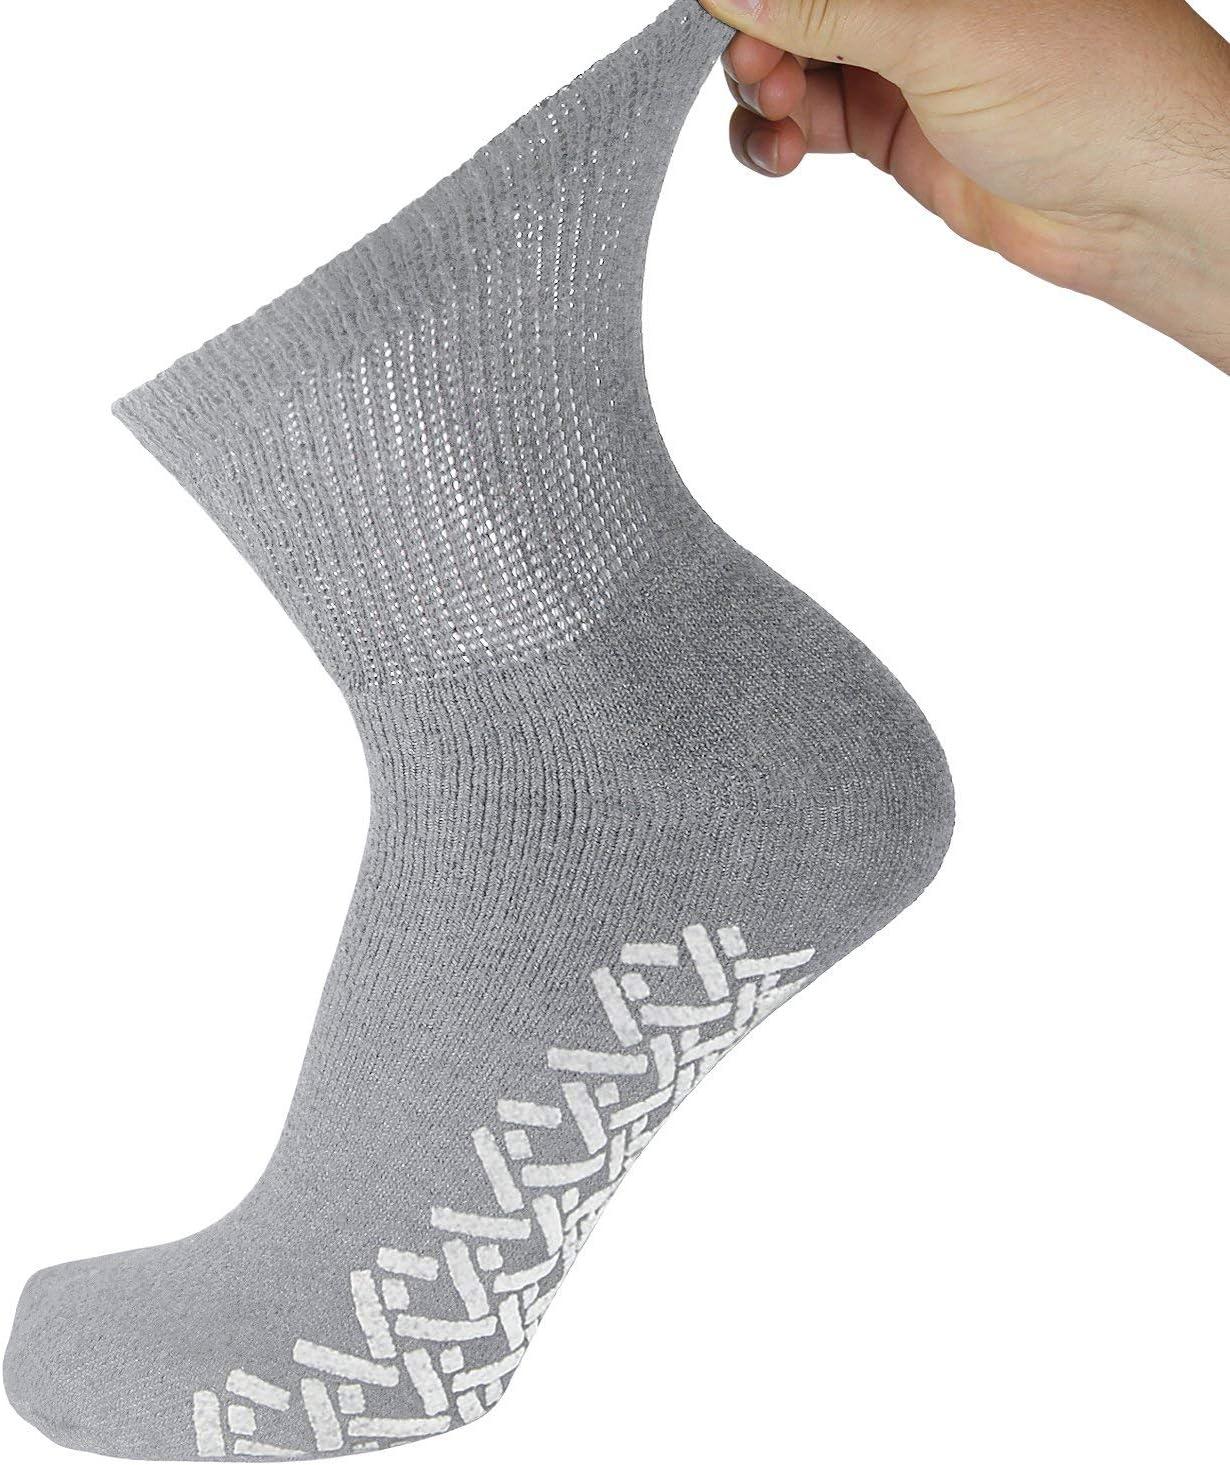 12 Pairs of Men's Non-Skid Diabetic Cotton Quarter Socks Non